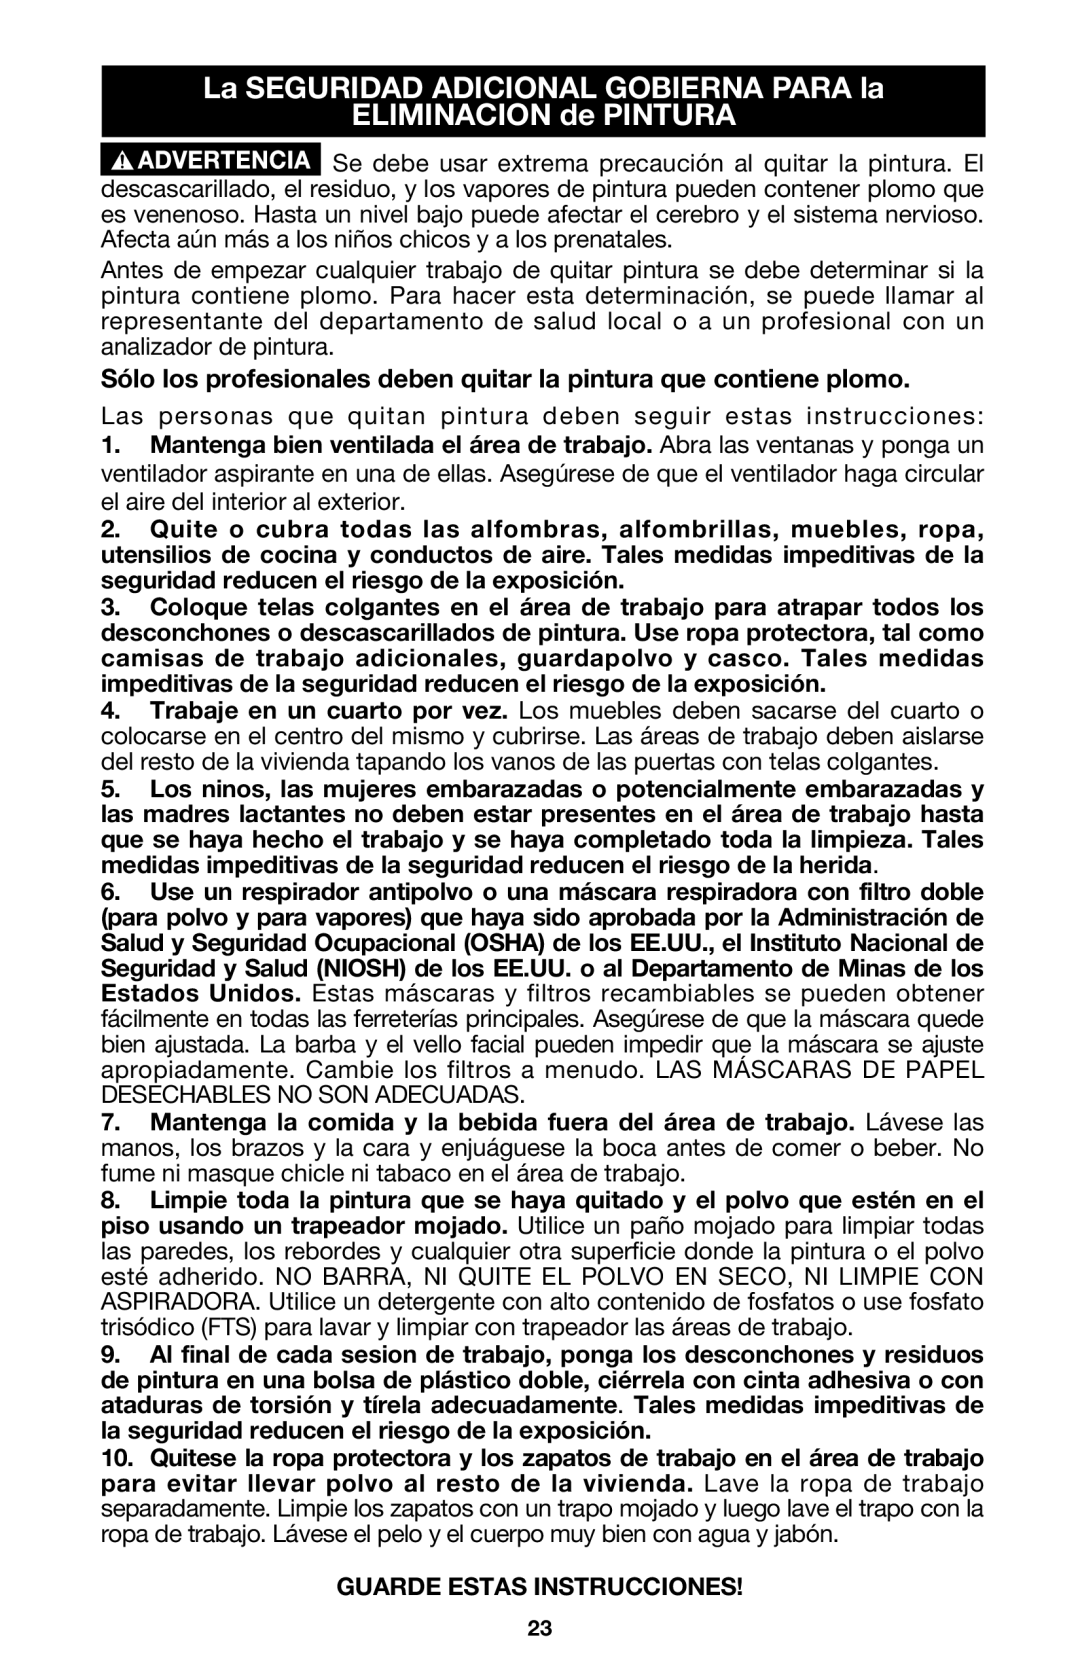 Porter-Cable 333VS instruction manual La SEGURIDAD ADICIONAL GOBIERNA PARA la ELIMINACION de PINTURA 